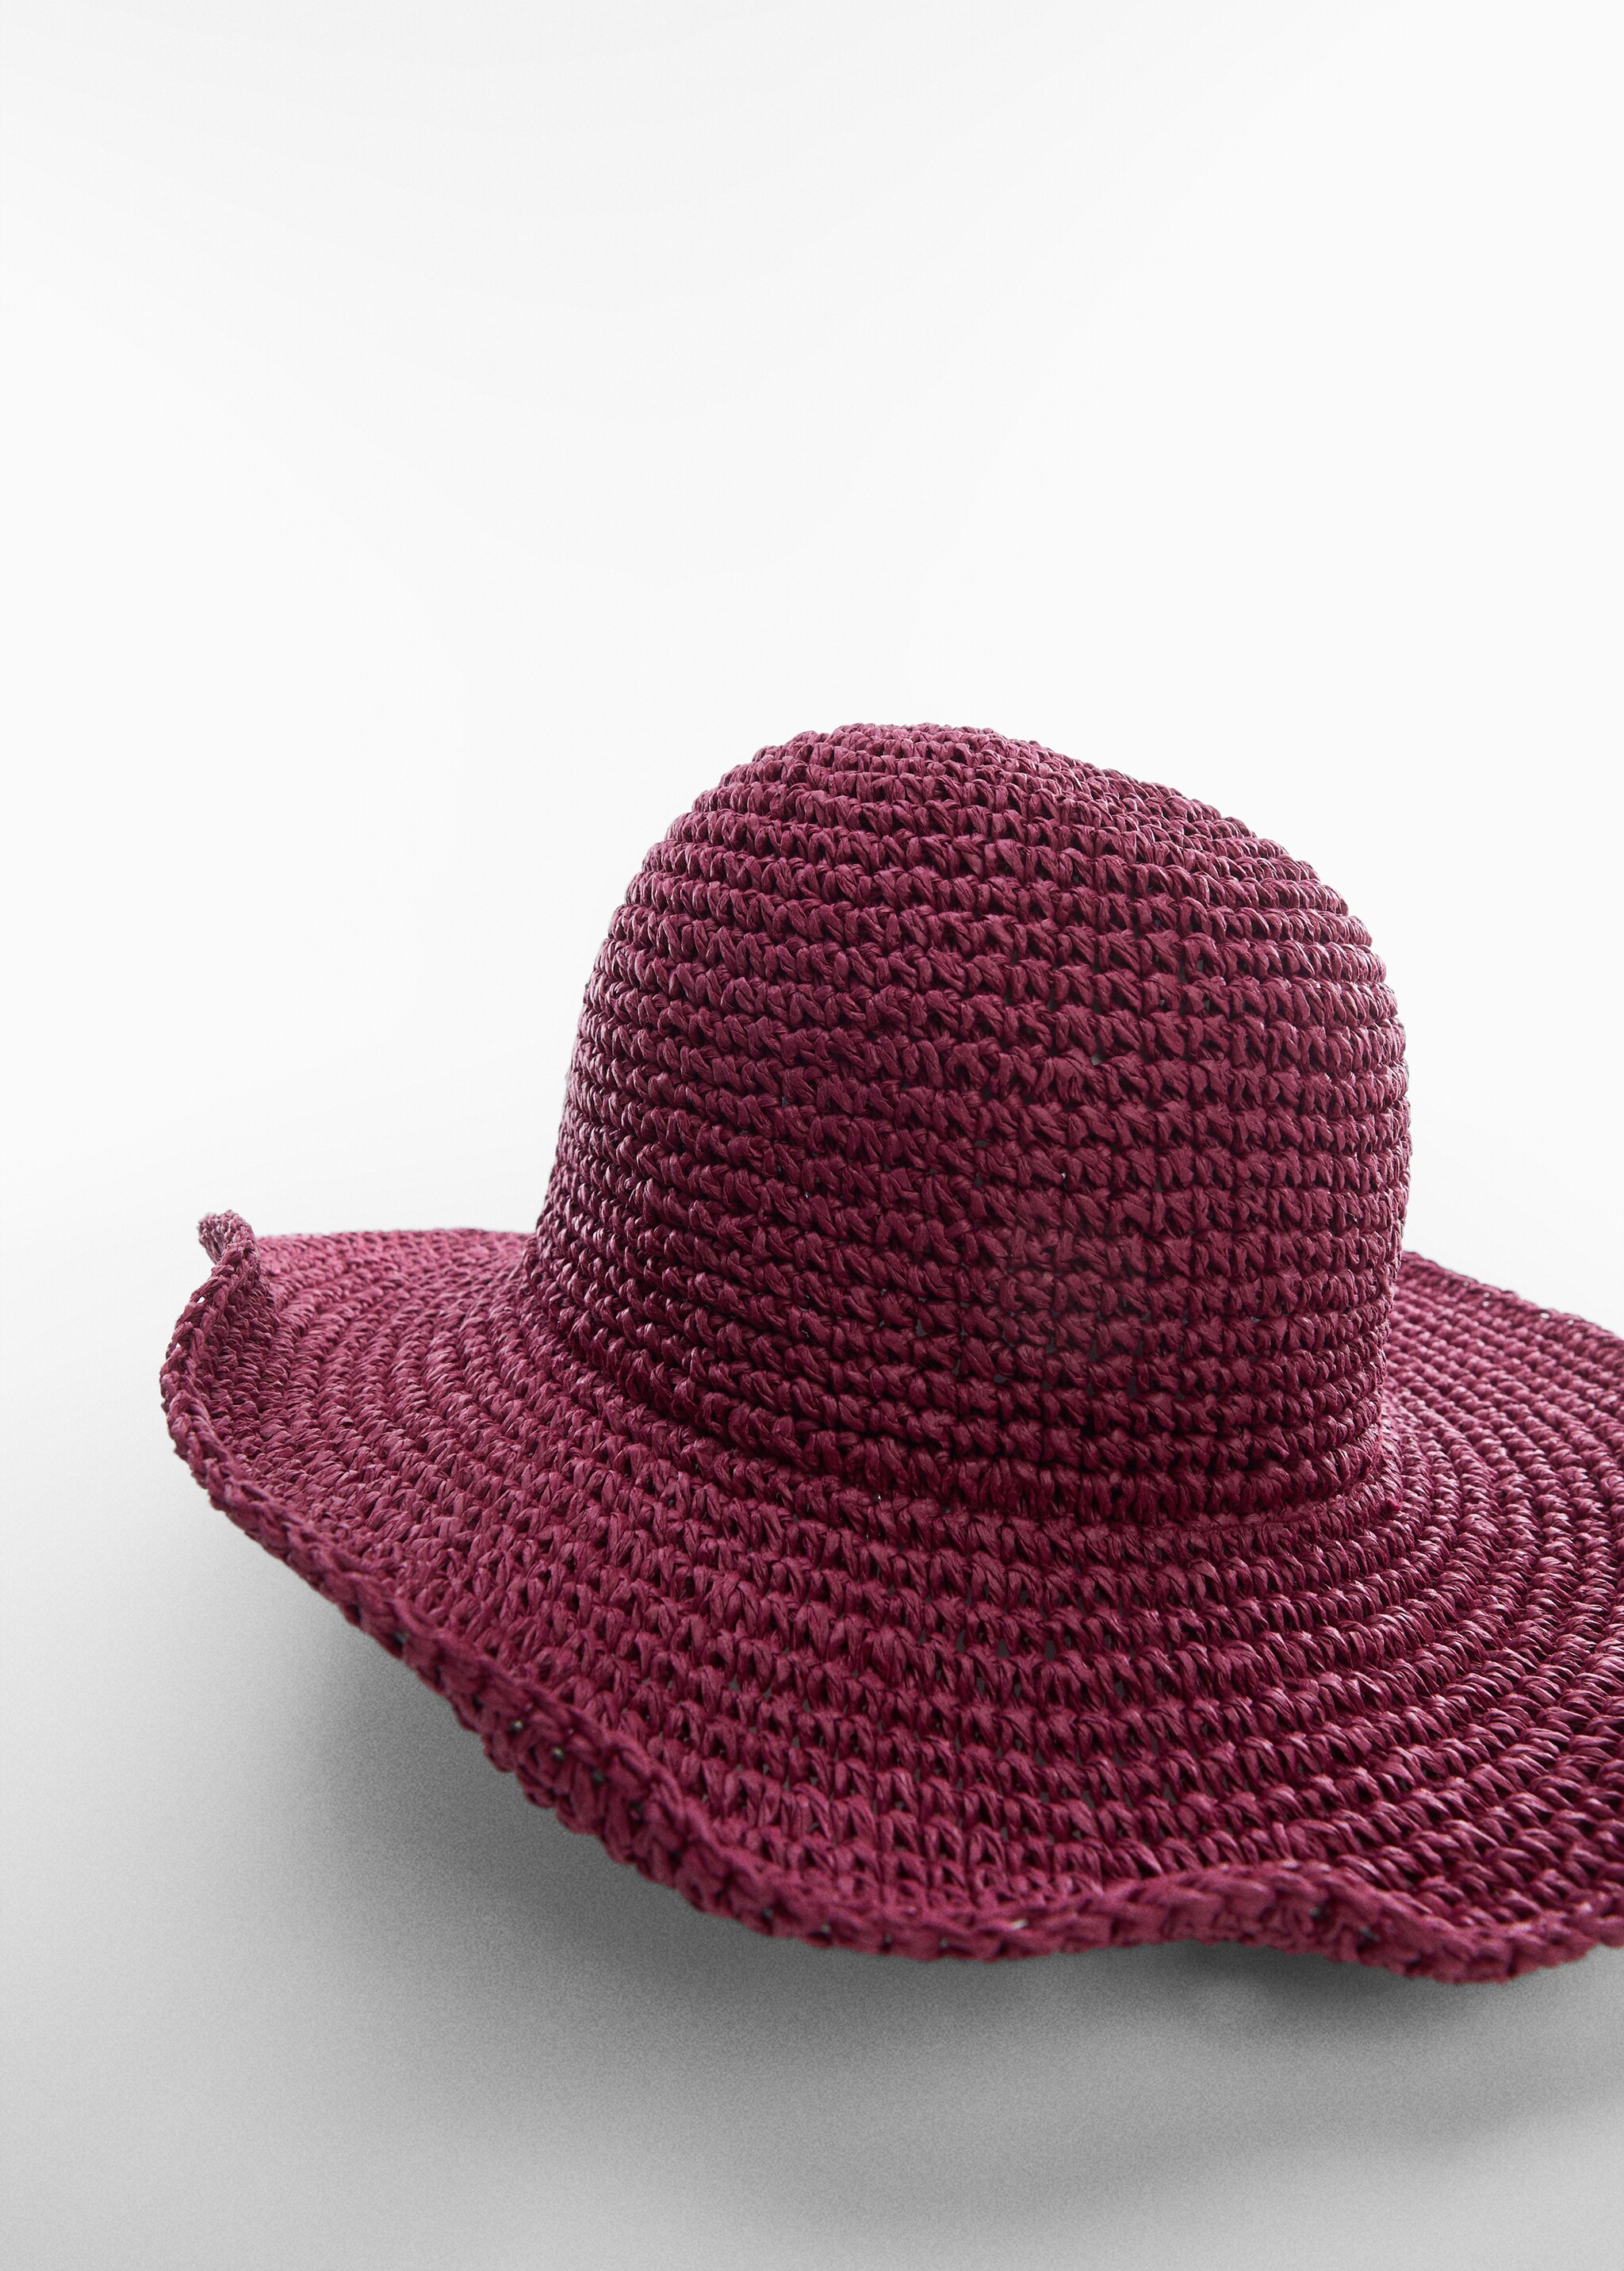 Natural fibre hat - Medium plane